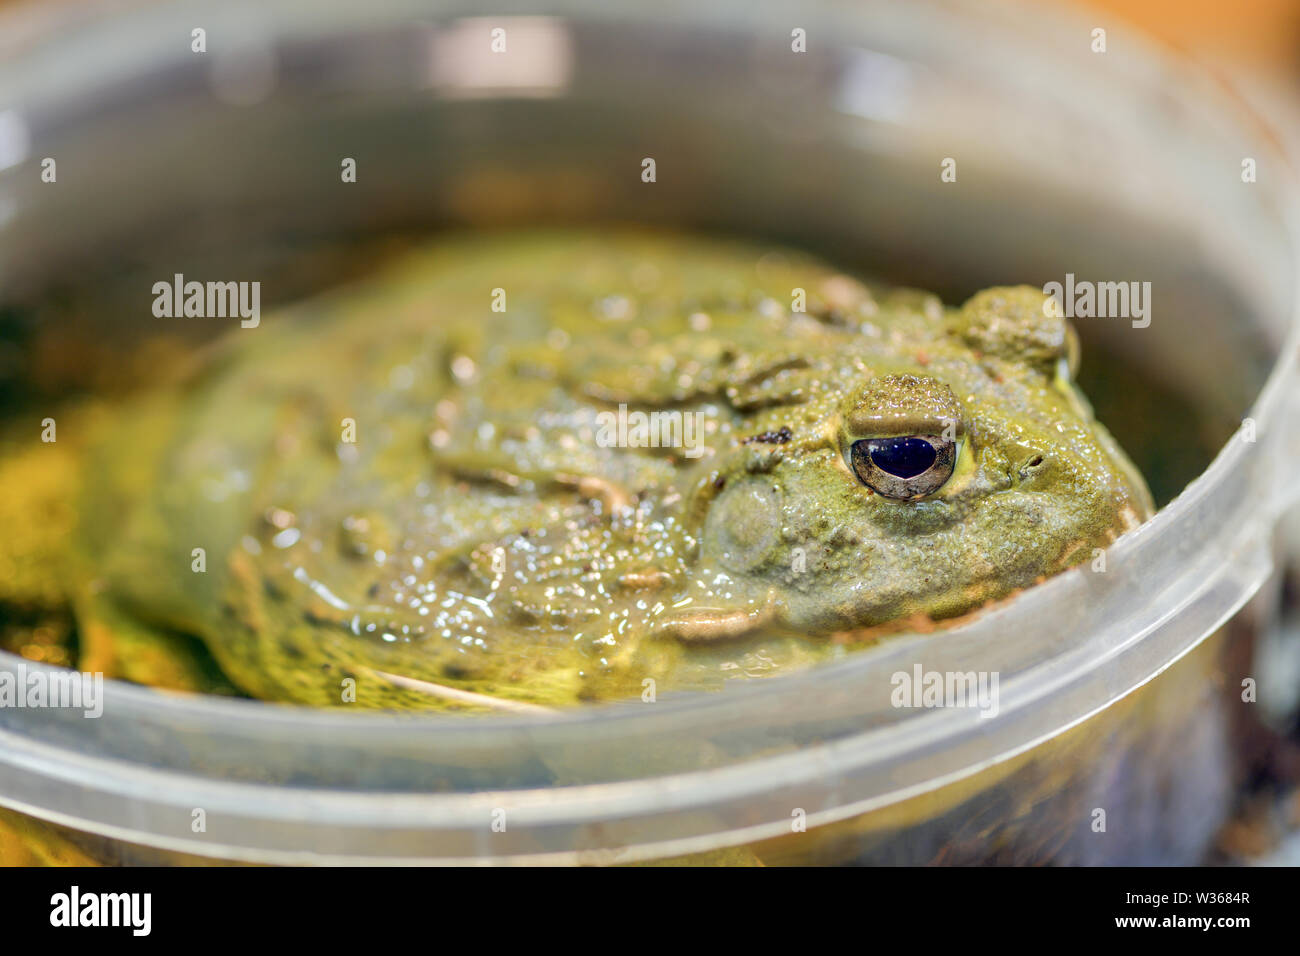 Pyxicephalus adspersus. Géant de l'Afrique de l'ouaouaron. La grenouille verte est une plante à l'eau, creuser grenouille assis dans un seau en plastique à proximité - dans un terrarium. Banque D'Images